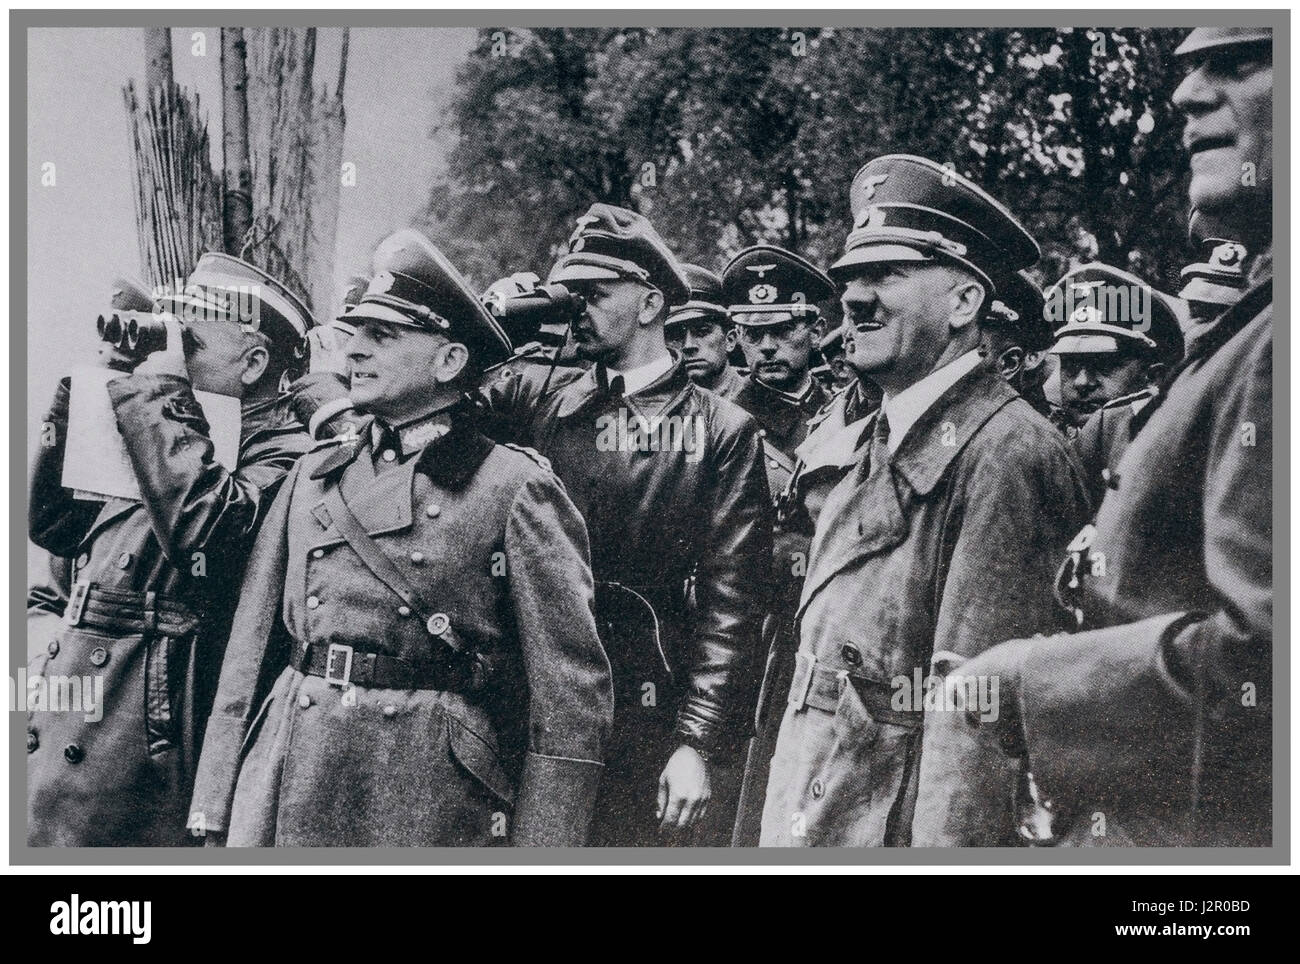 1940 La Seconde Guerre mondiale, la propagande nazie allemande 2 photo d'un heureux Führer Adolf Hitler en uniforme avec ses généraux sur "le mur ouest' également nommé le eigfried "Ligne" par les forces alliées. Image prise par le photographe personnel du Führer Hoffman Banque D'Images